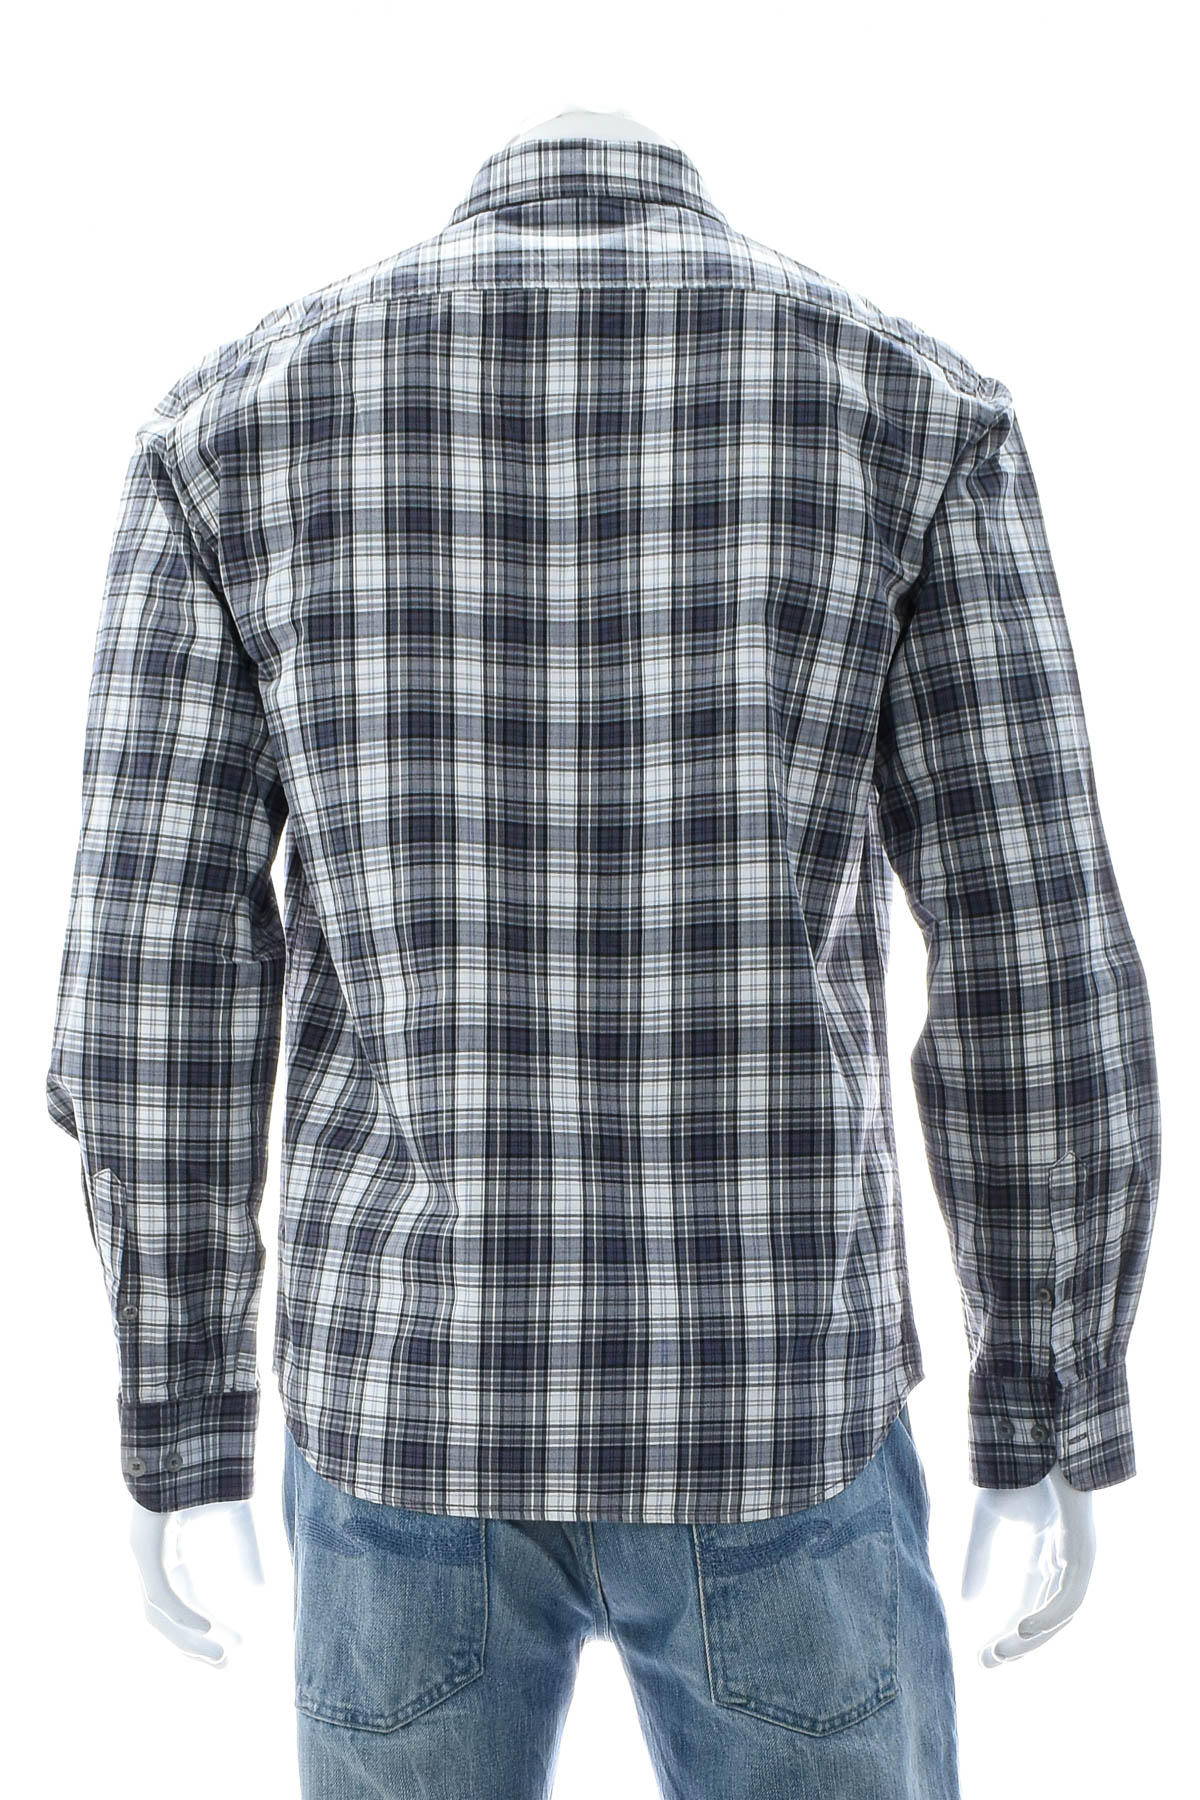 Ανδρικό πουκάμισο - Watsons - 1